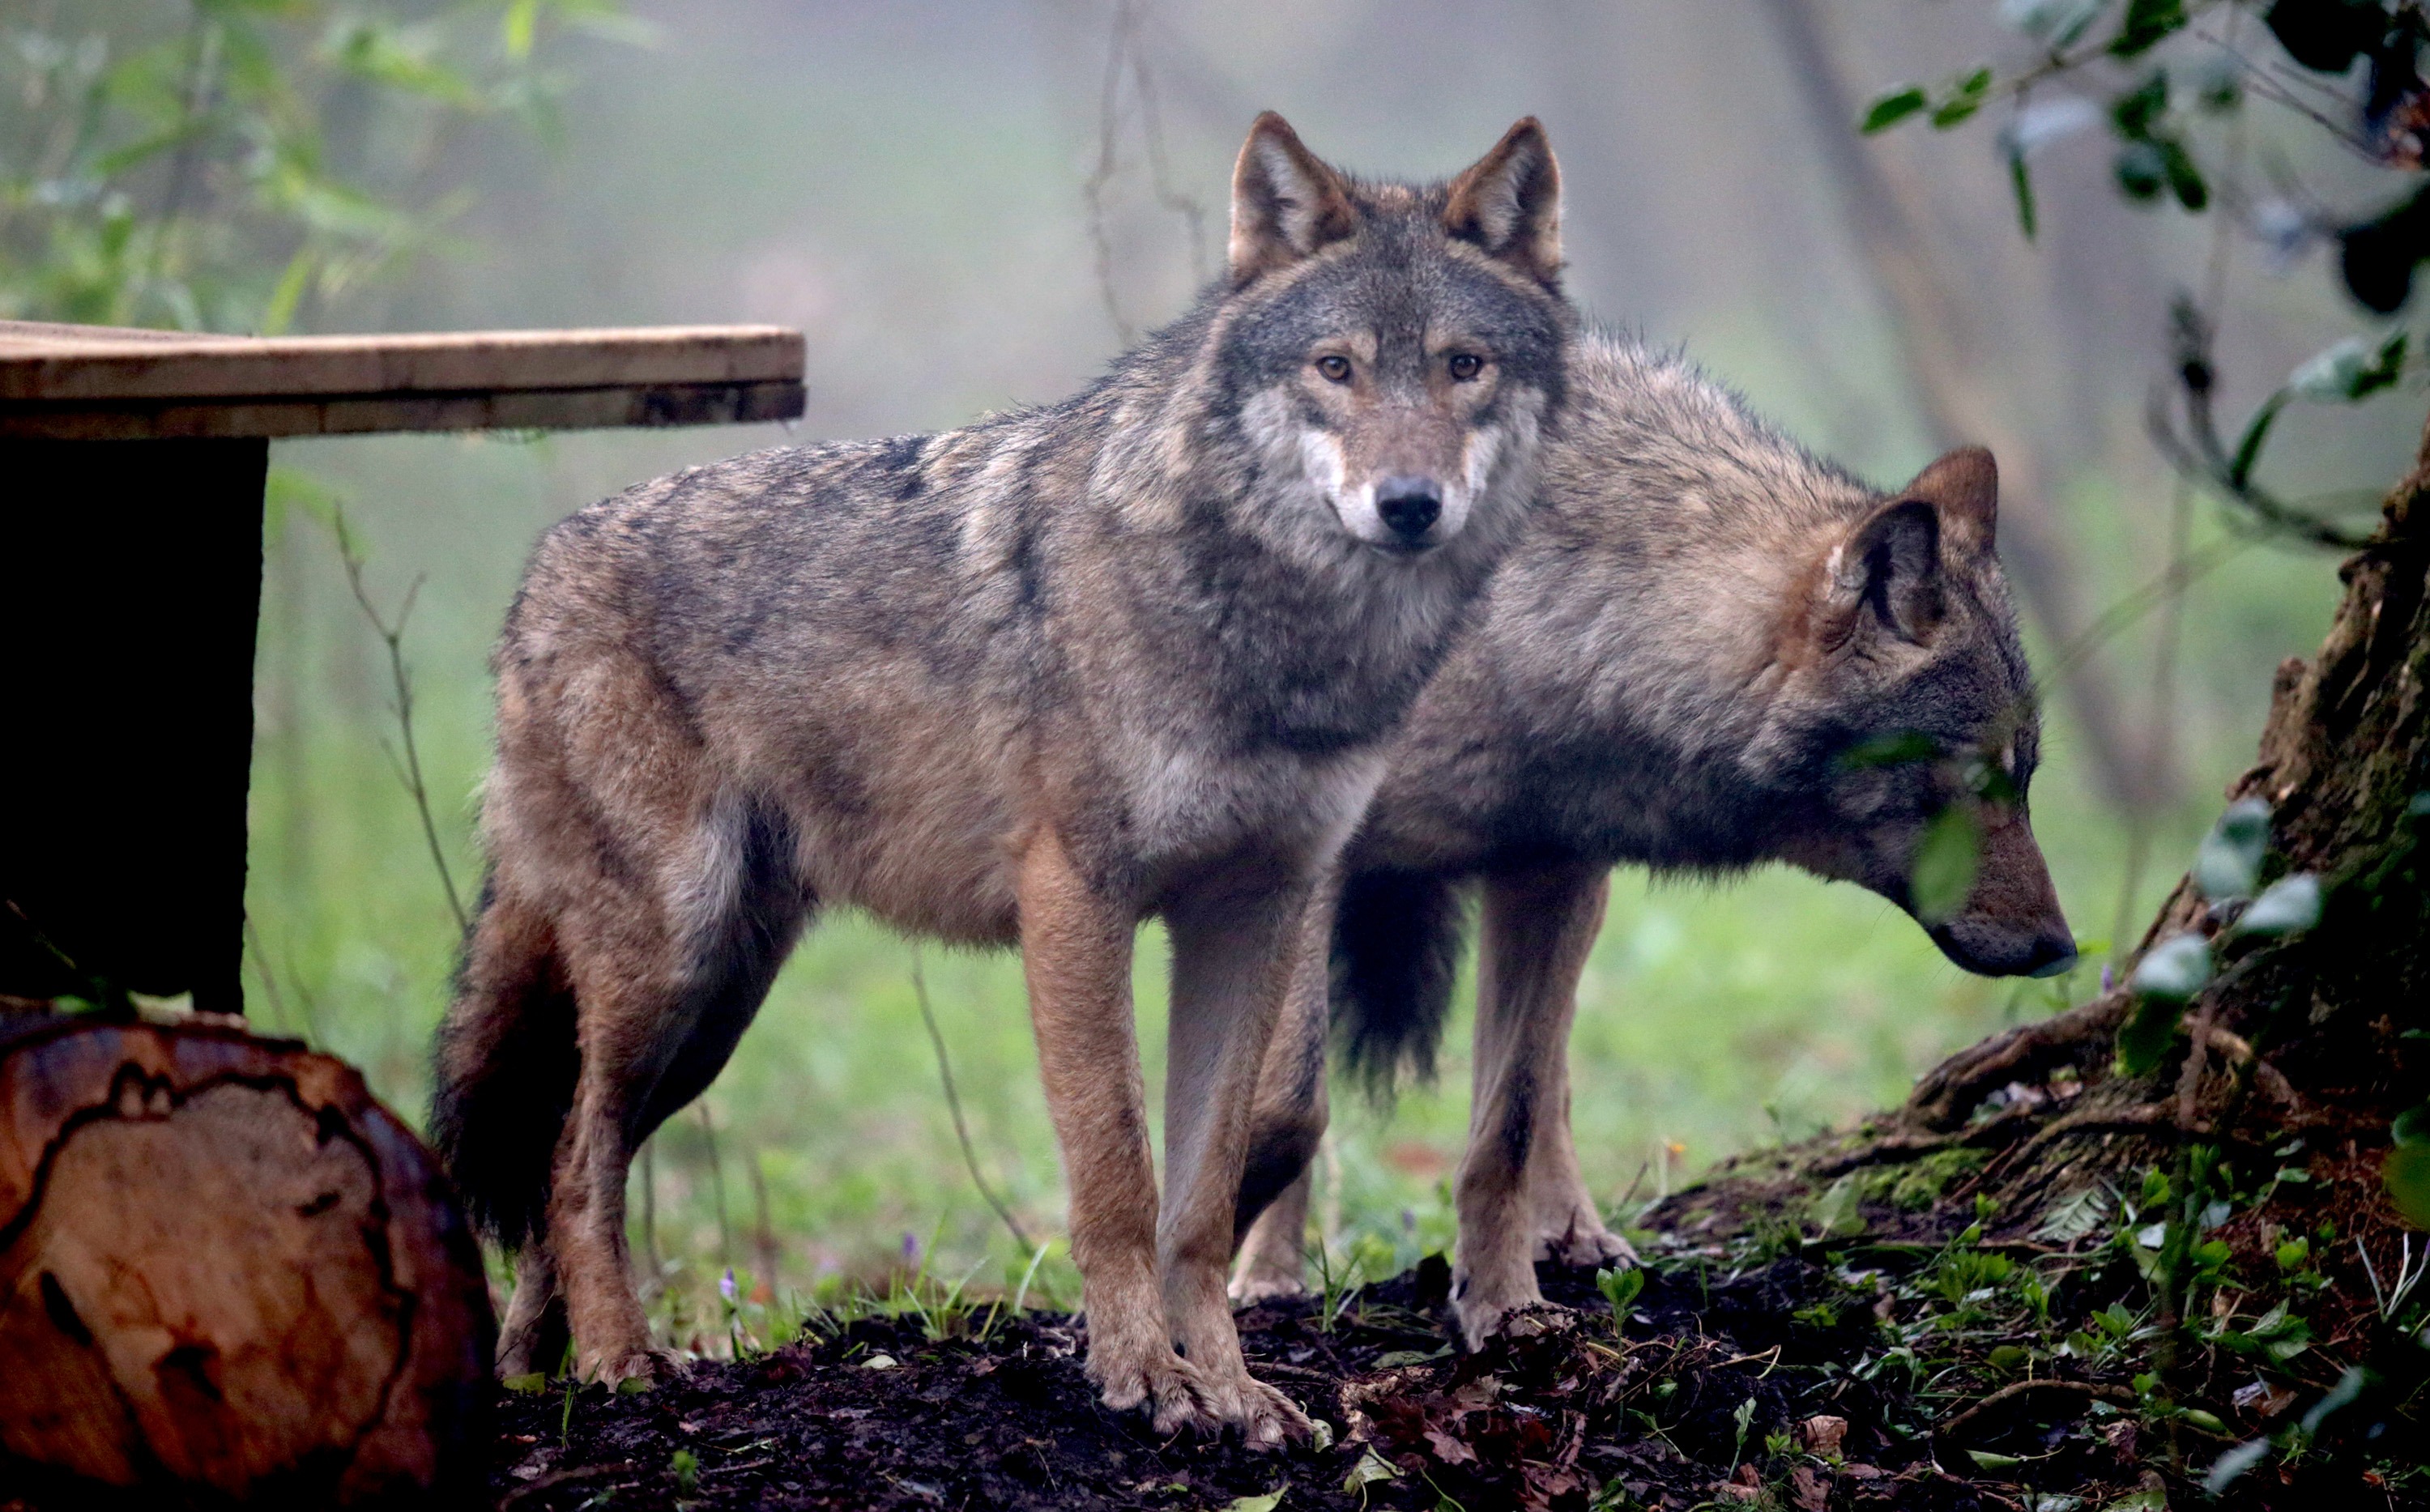 Krisenstab eingerichtet: Wolfsrudel aus Gehege im Bayerischen Wald ausgebrochen